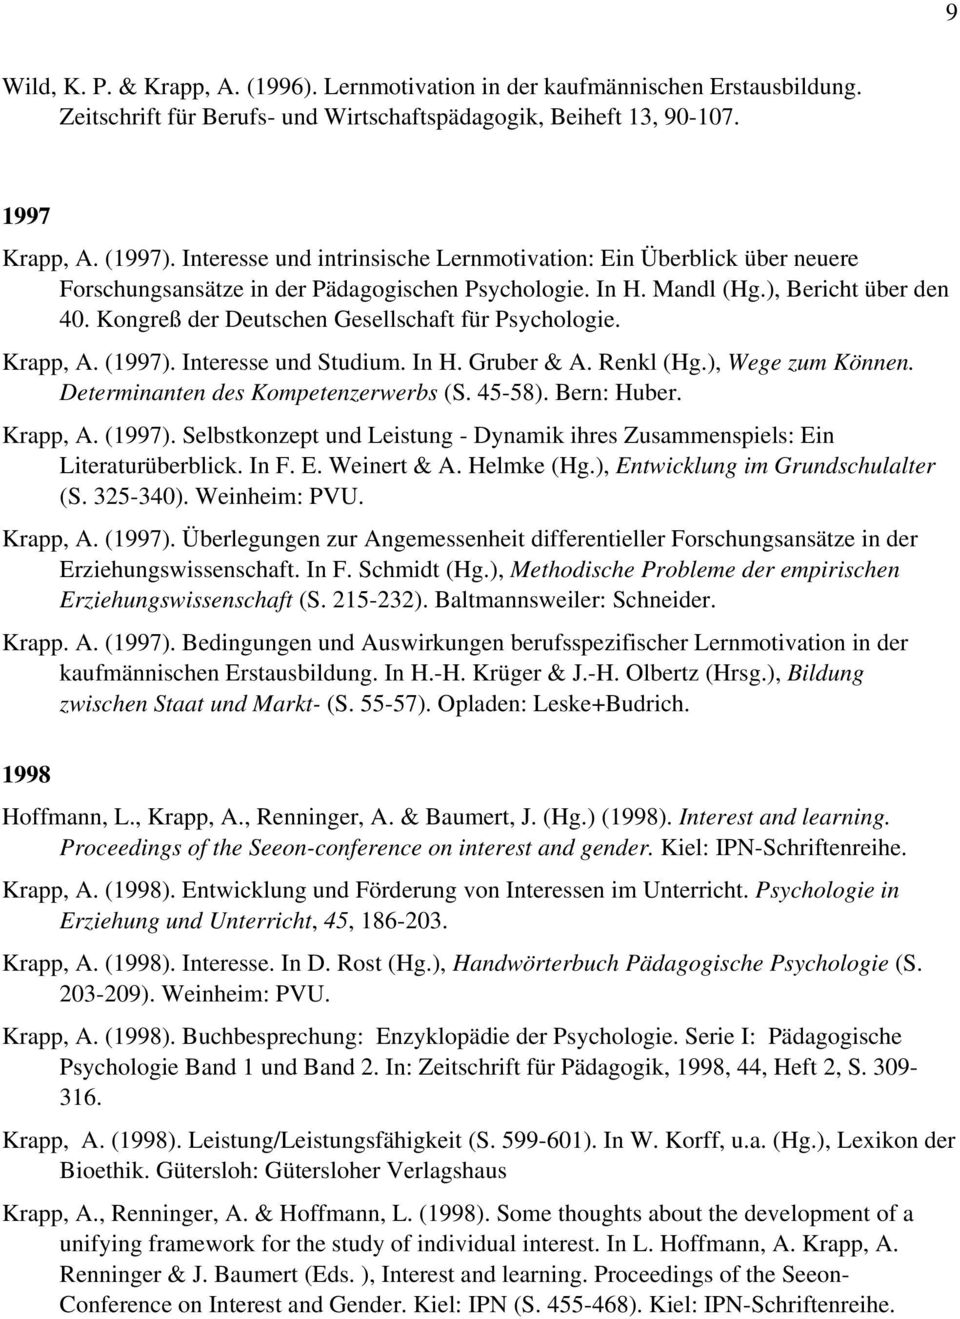 Kongreß der Deutschen Gesellschaft für Psychologie. Krapp, A. (1997). Interesse und Studium. In H. Gruber & A. Renkl (Hg.), Wege zum Können. Determinanten des Kompetenzerwerbs (S. 45-58). Bern: Huber.